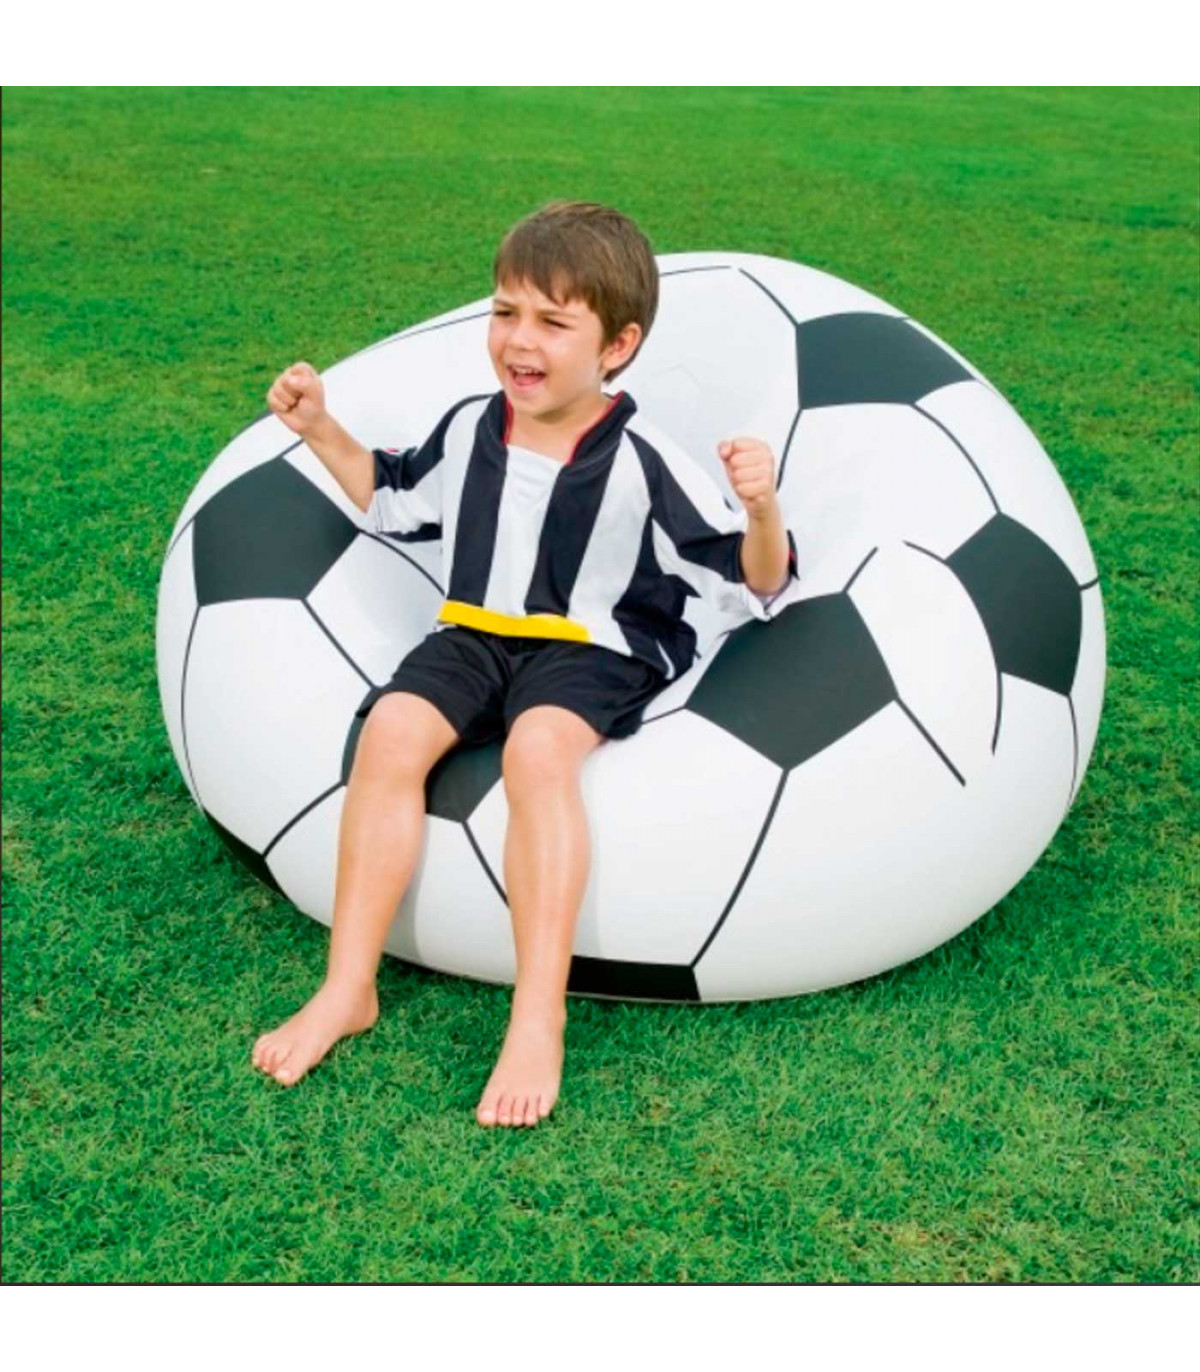 Tradineur - Sillón hinchable fútbol 114 x 112 x 66 cm, puff inflable balón,  asiento forma de pelota para interior y exterior, vá